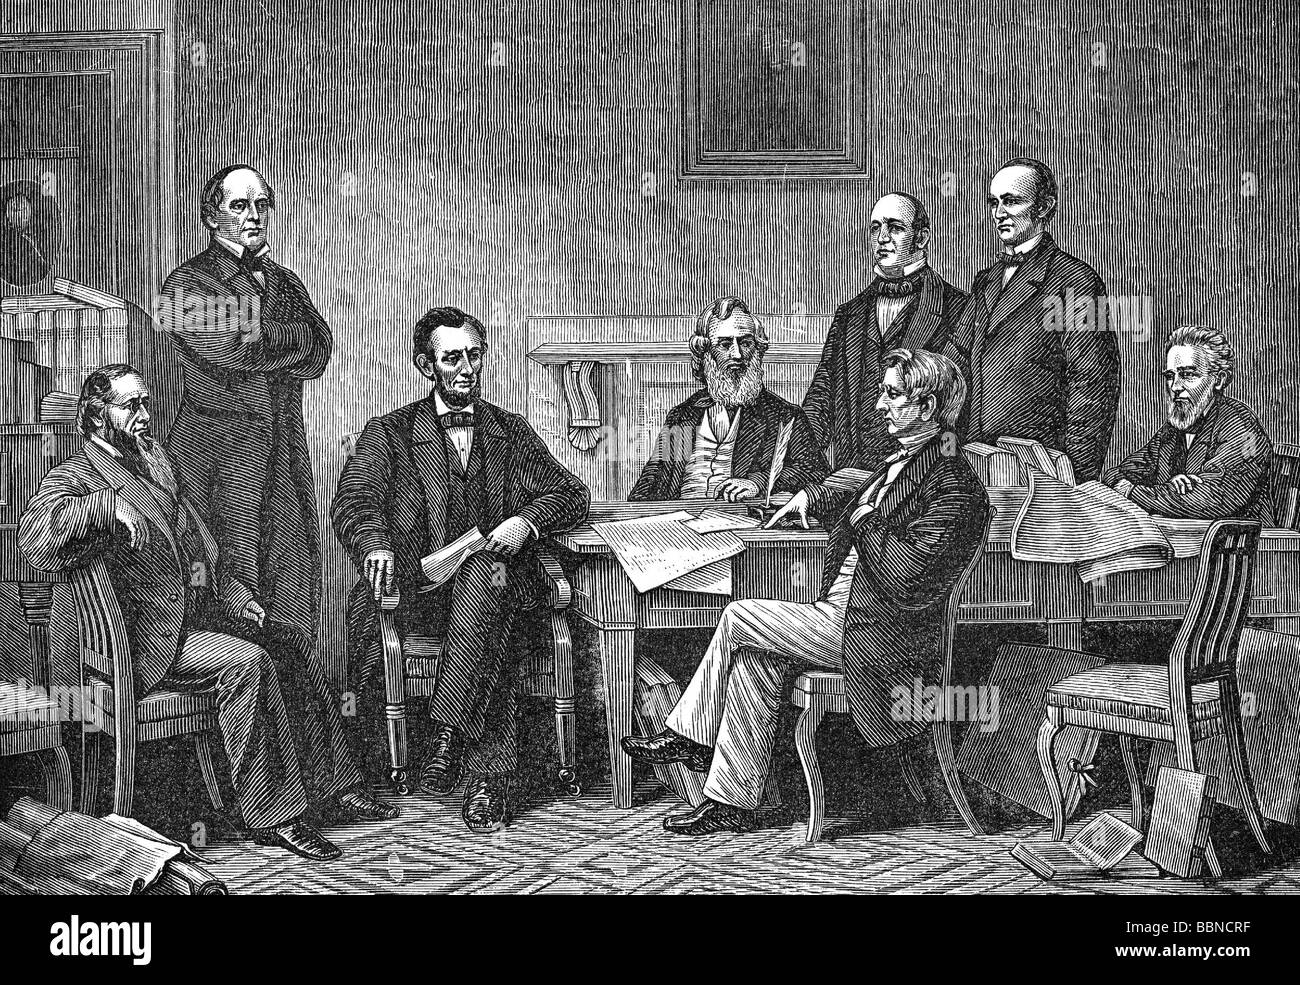 Lincoln, Abraham, 12.2.1809 - 15.4.1865, politico americano (Rep), 16th Presidente degli Stati Uniti 4.3.1861 - 15.4.1865, firma la Proclamazione di emancipazione, Washington DC, 22.9.1862, incisione del legno, 19th secolo, Foto Stock